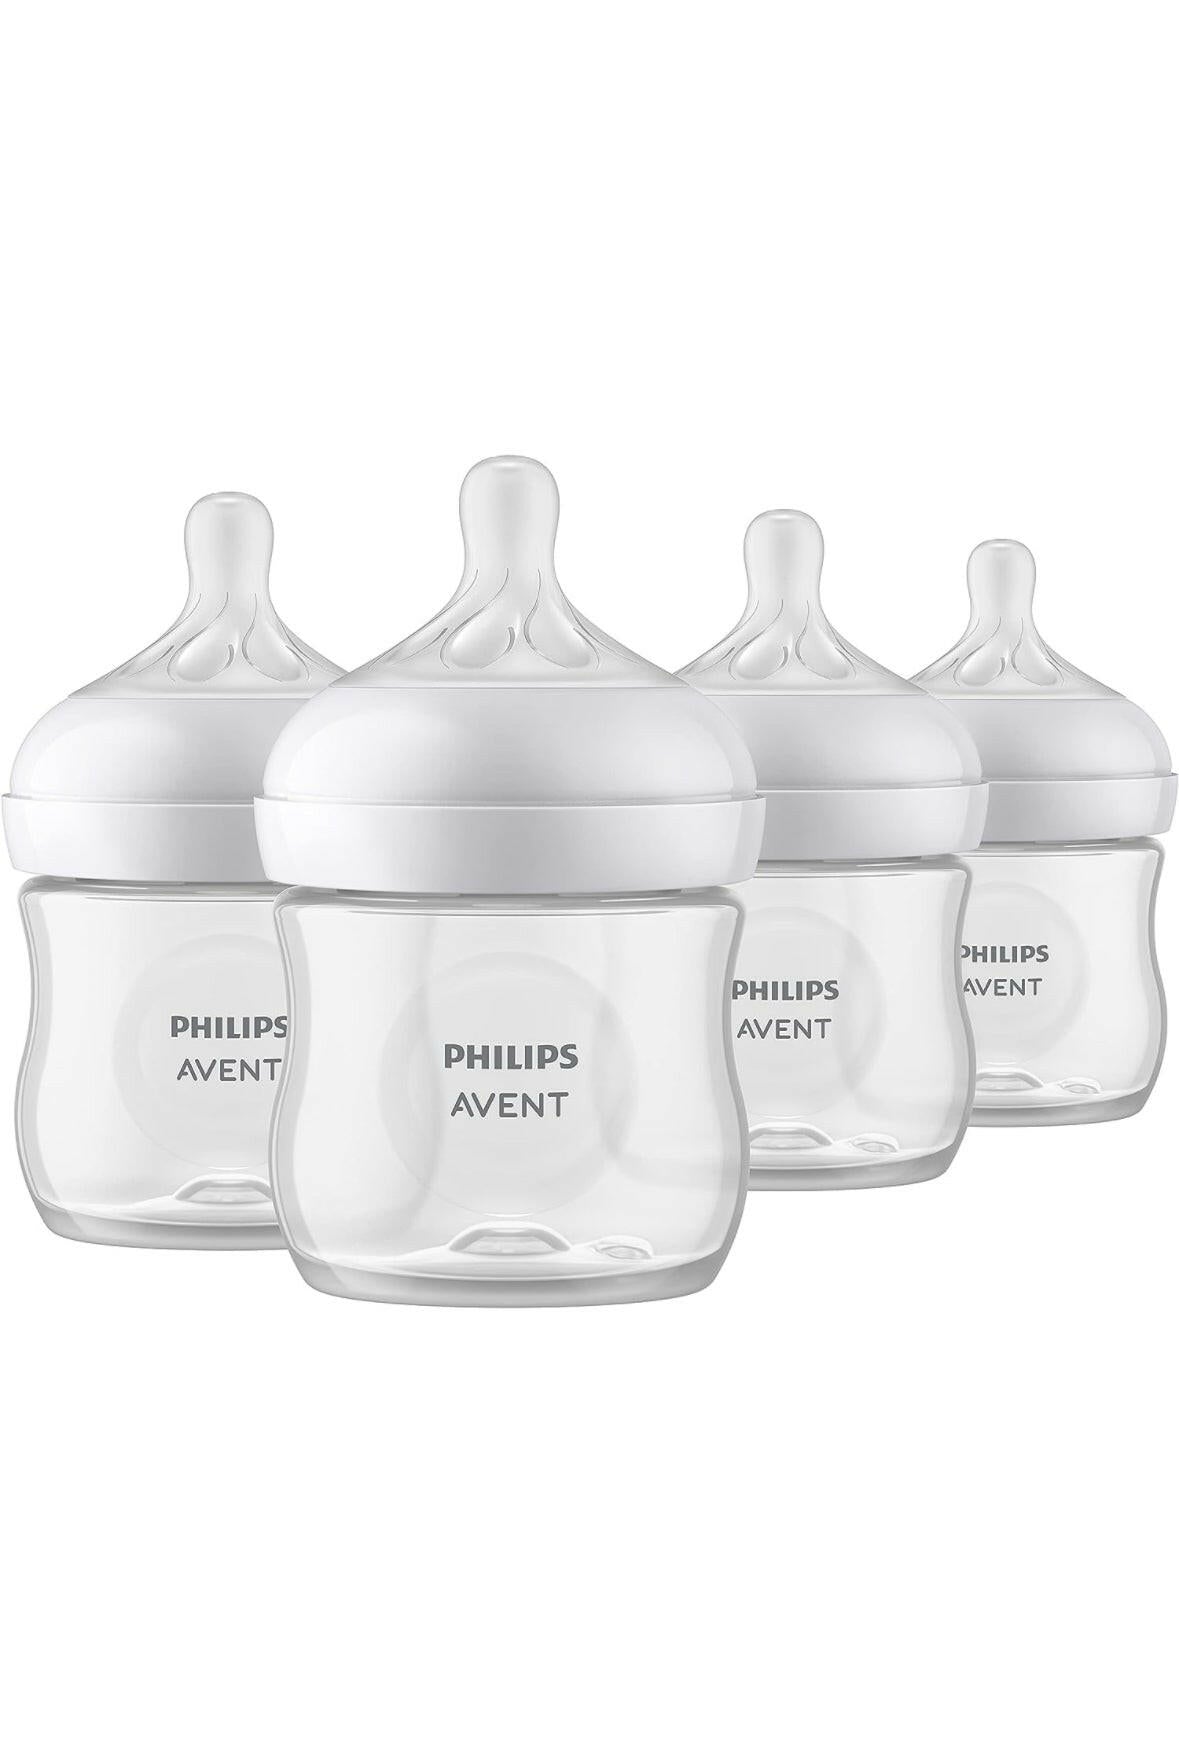 زجاجة فيليبس أفينت الطبيعية للأطفال مع حلمة الاستجابة الطبيعية، شفافة، 4 أونصة، 4 قطع